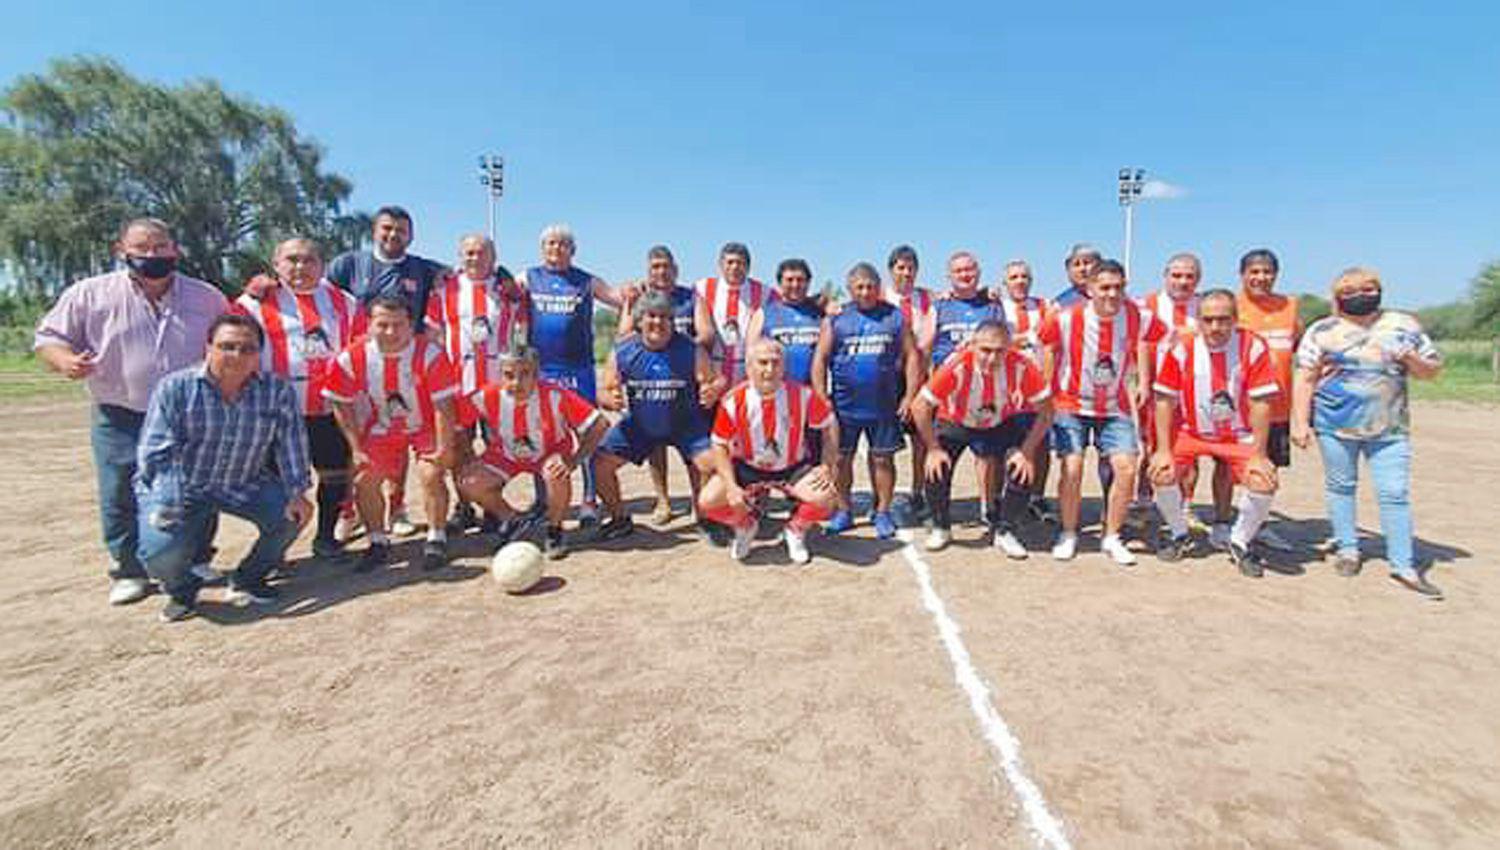 El encuentro se jugó en la cancha del Club Atlético Vinar� donde los veteranos locales se enfrentaron en
un partido amistoso con el conjunto tucumano integrado por sus viejas glorias